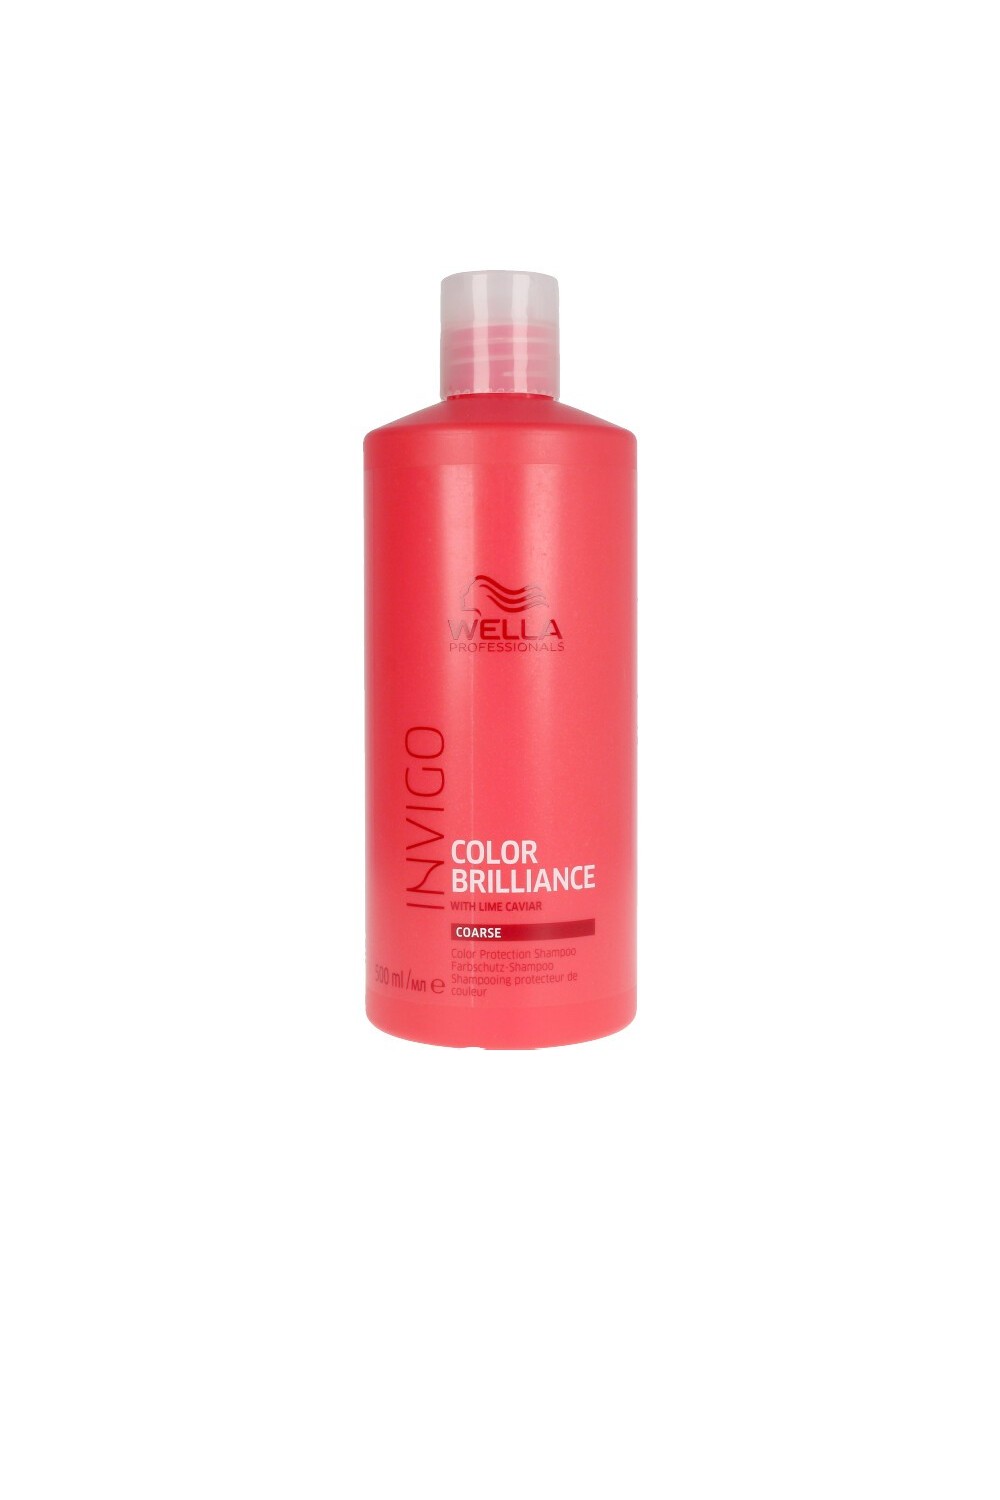 Wella Invigo Color Brilliance Shampoo Coarse Hair 500ml